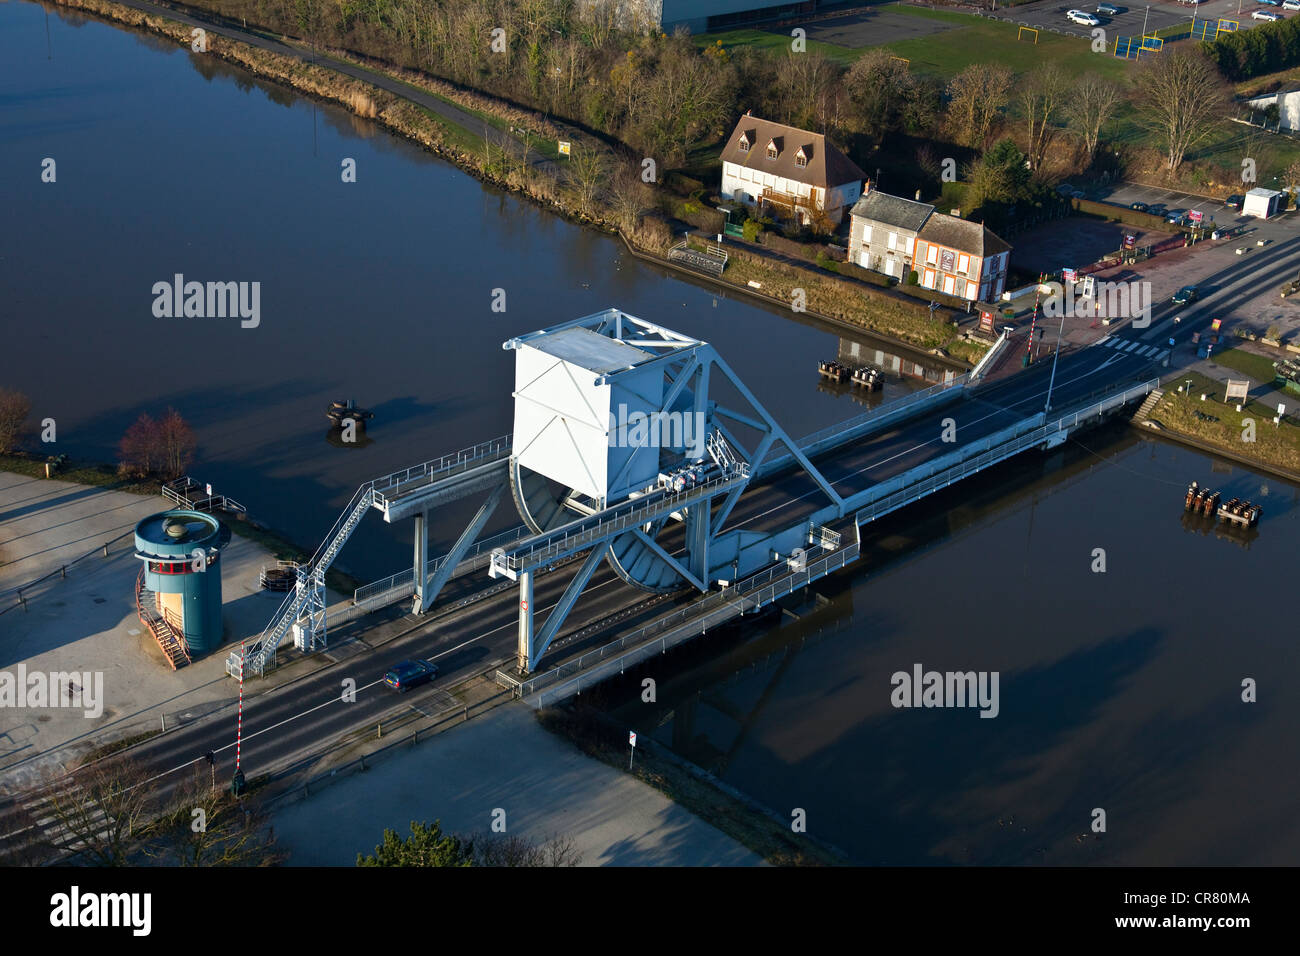 France, Basse-Normandie, Calvados (14), Pont de BÃ©nouville ou PÃ©gasus Bridge, pont levant traversant le canal de caen Ã  la Stock Photo